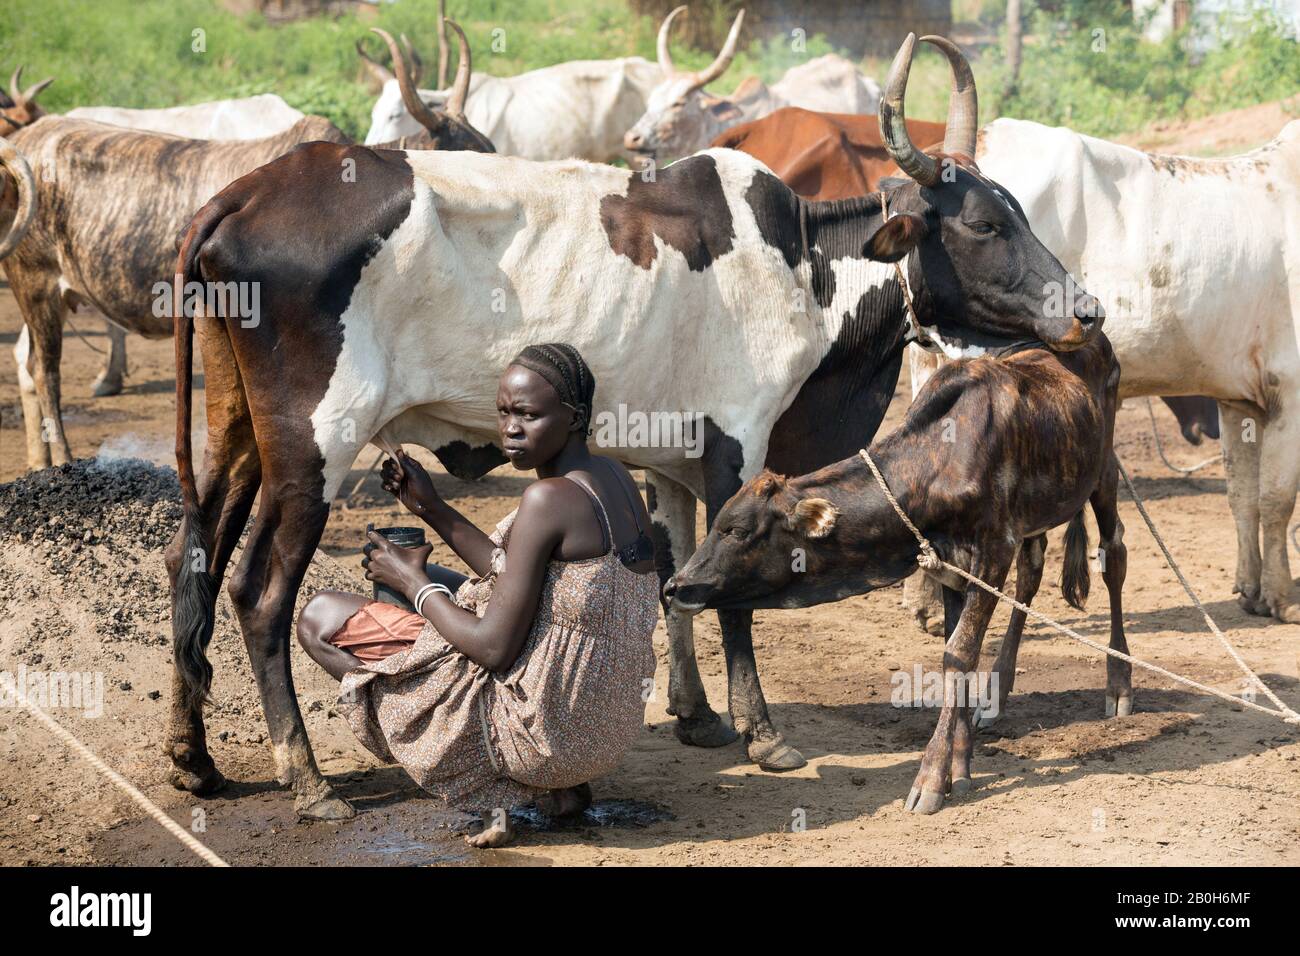 31.10.2019, Belinkum, Gambela, Ethiopie - éleveur de bovins du groupe ethnique éthiopien Nuer. Une femme traite une vache africaine. Documentation du projet Banque D'Images